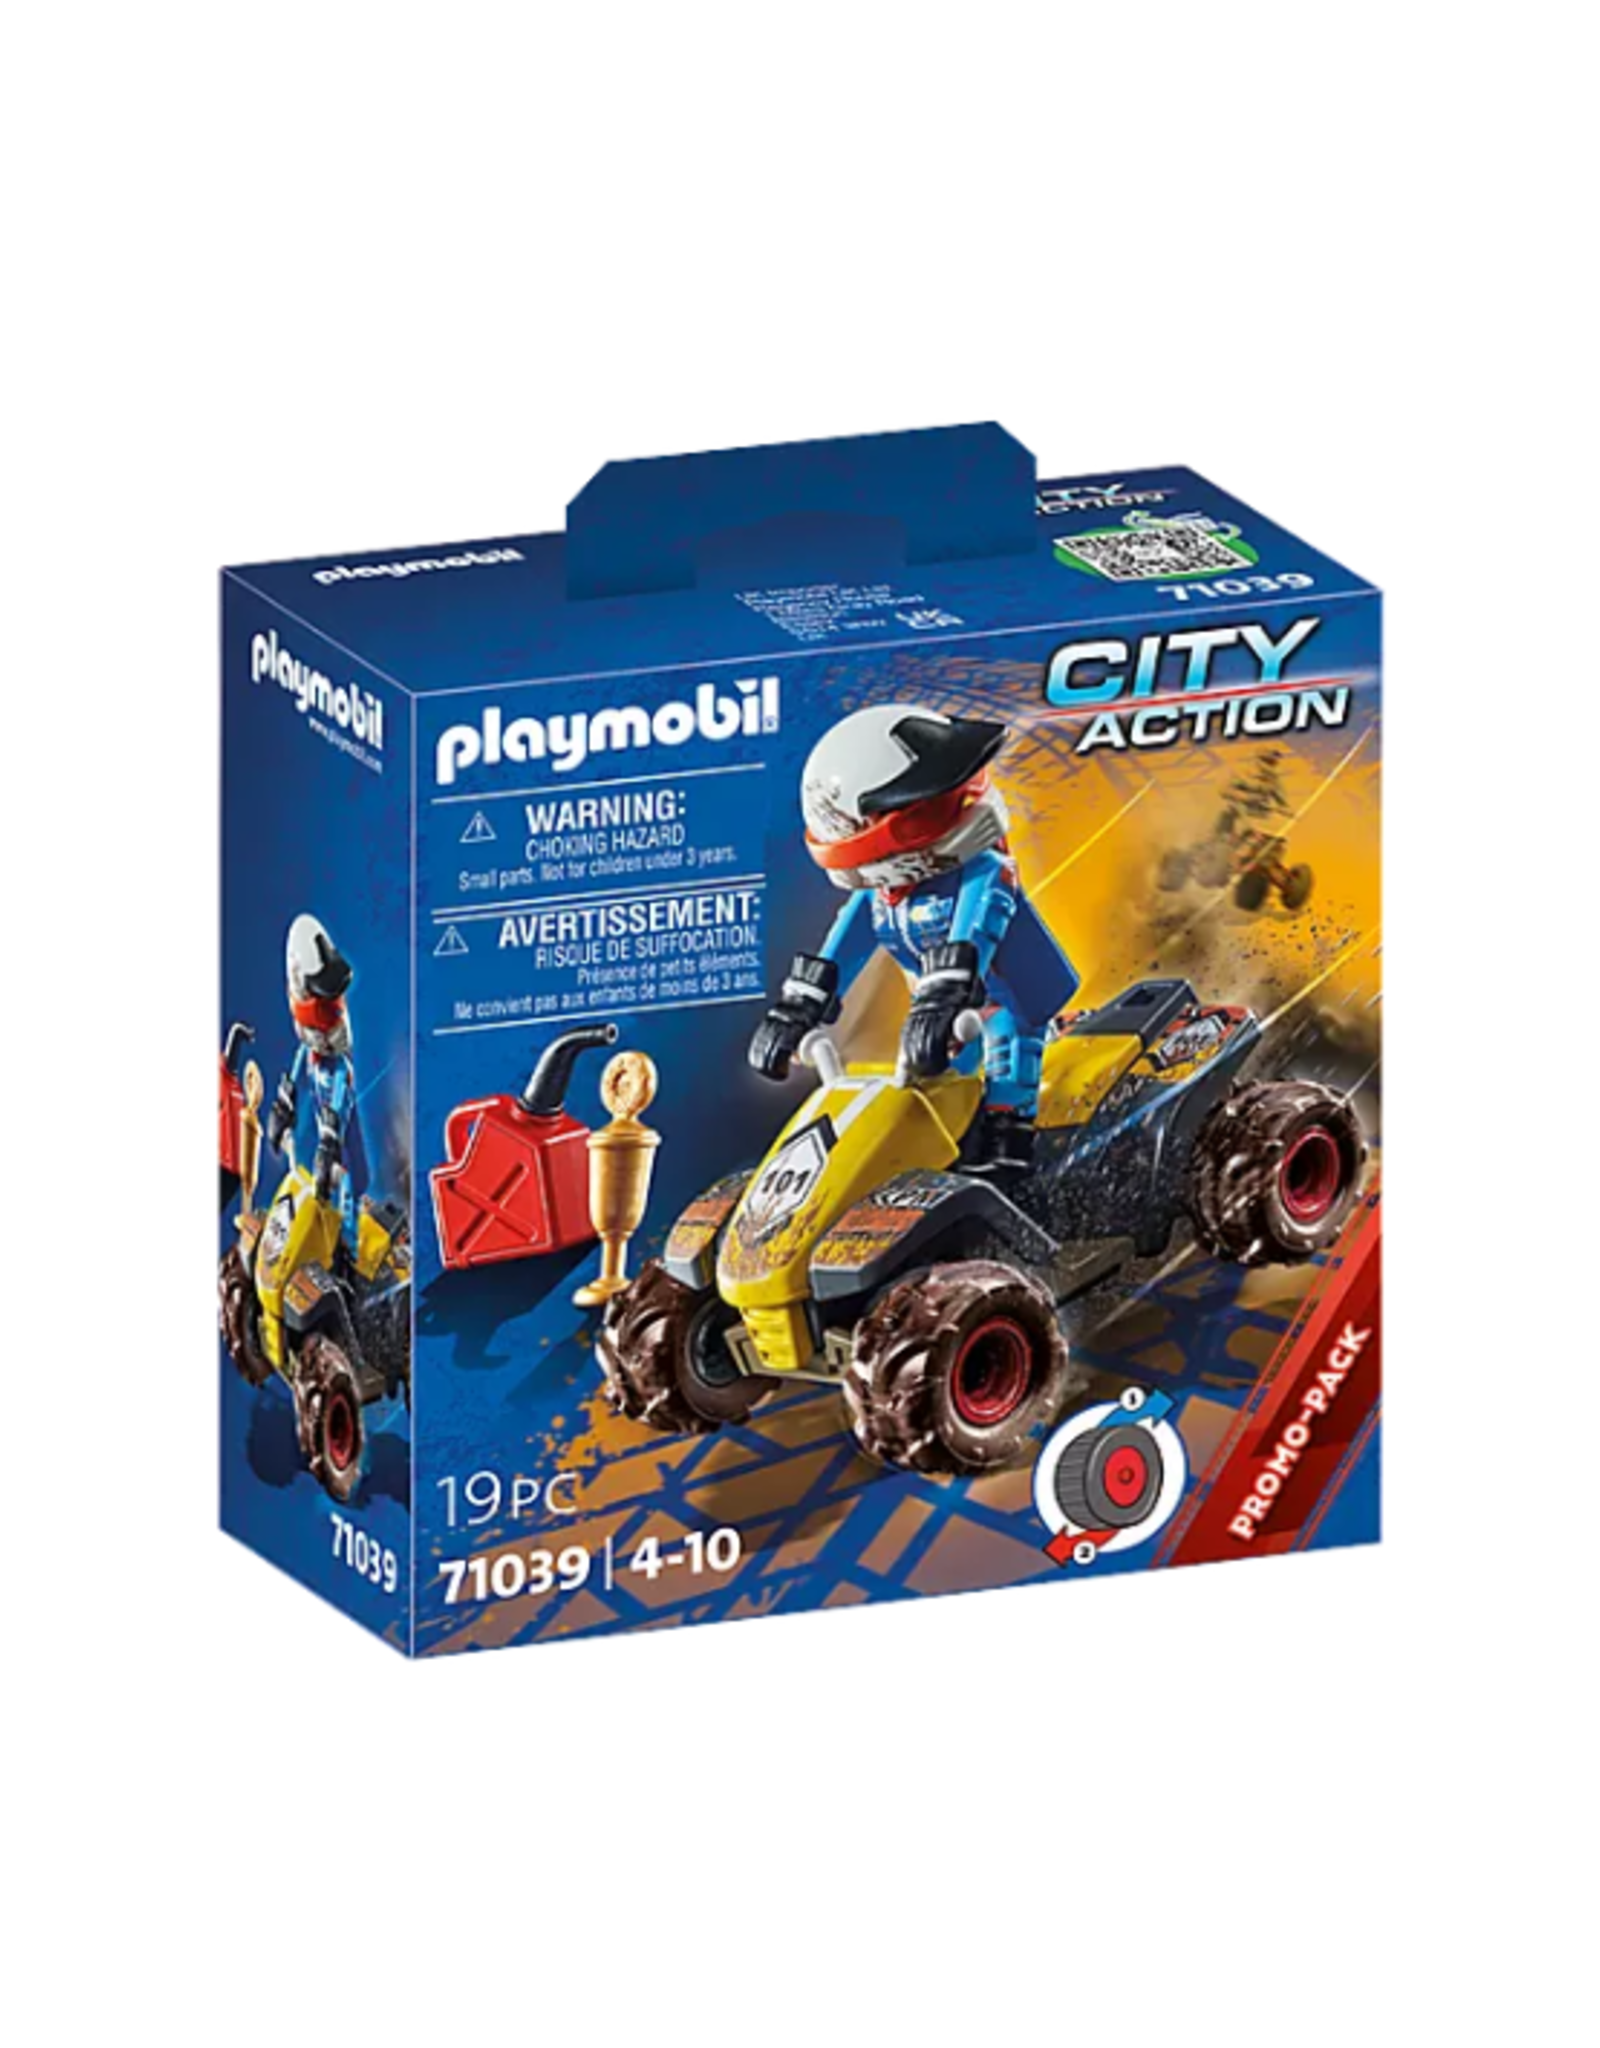 Playmobil Playmobil - City Action - 71039 - Racing Quad